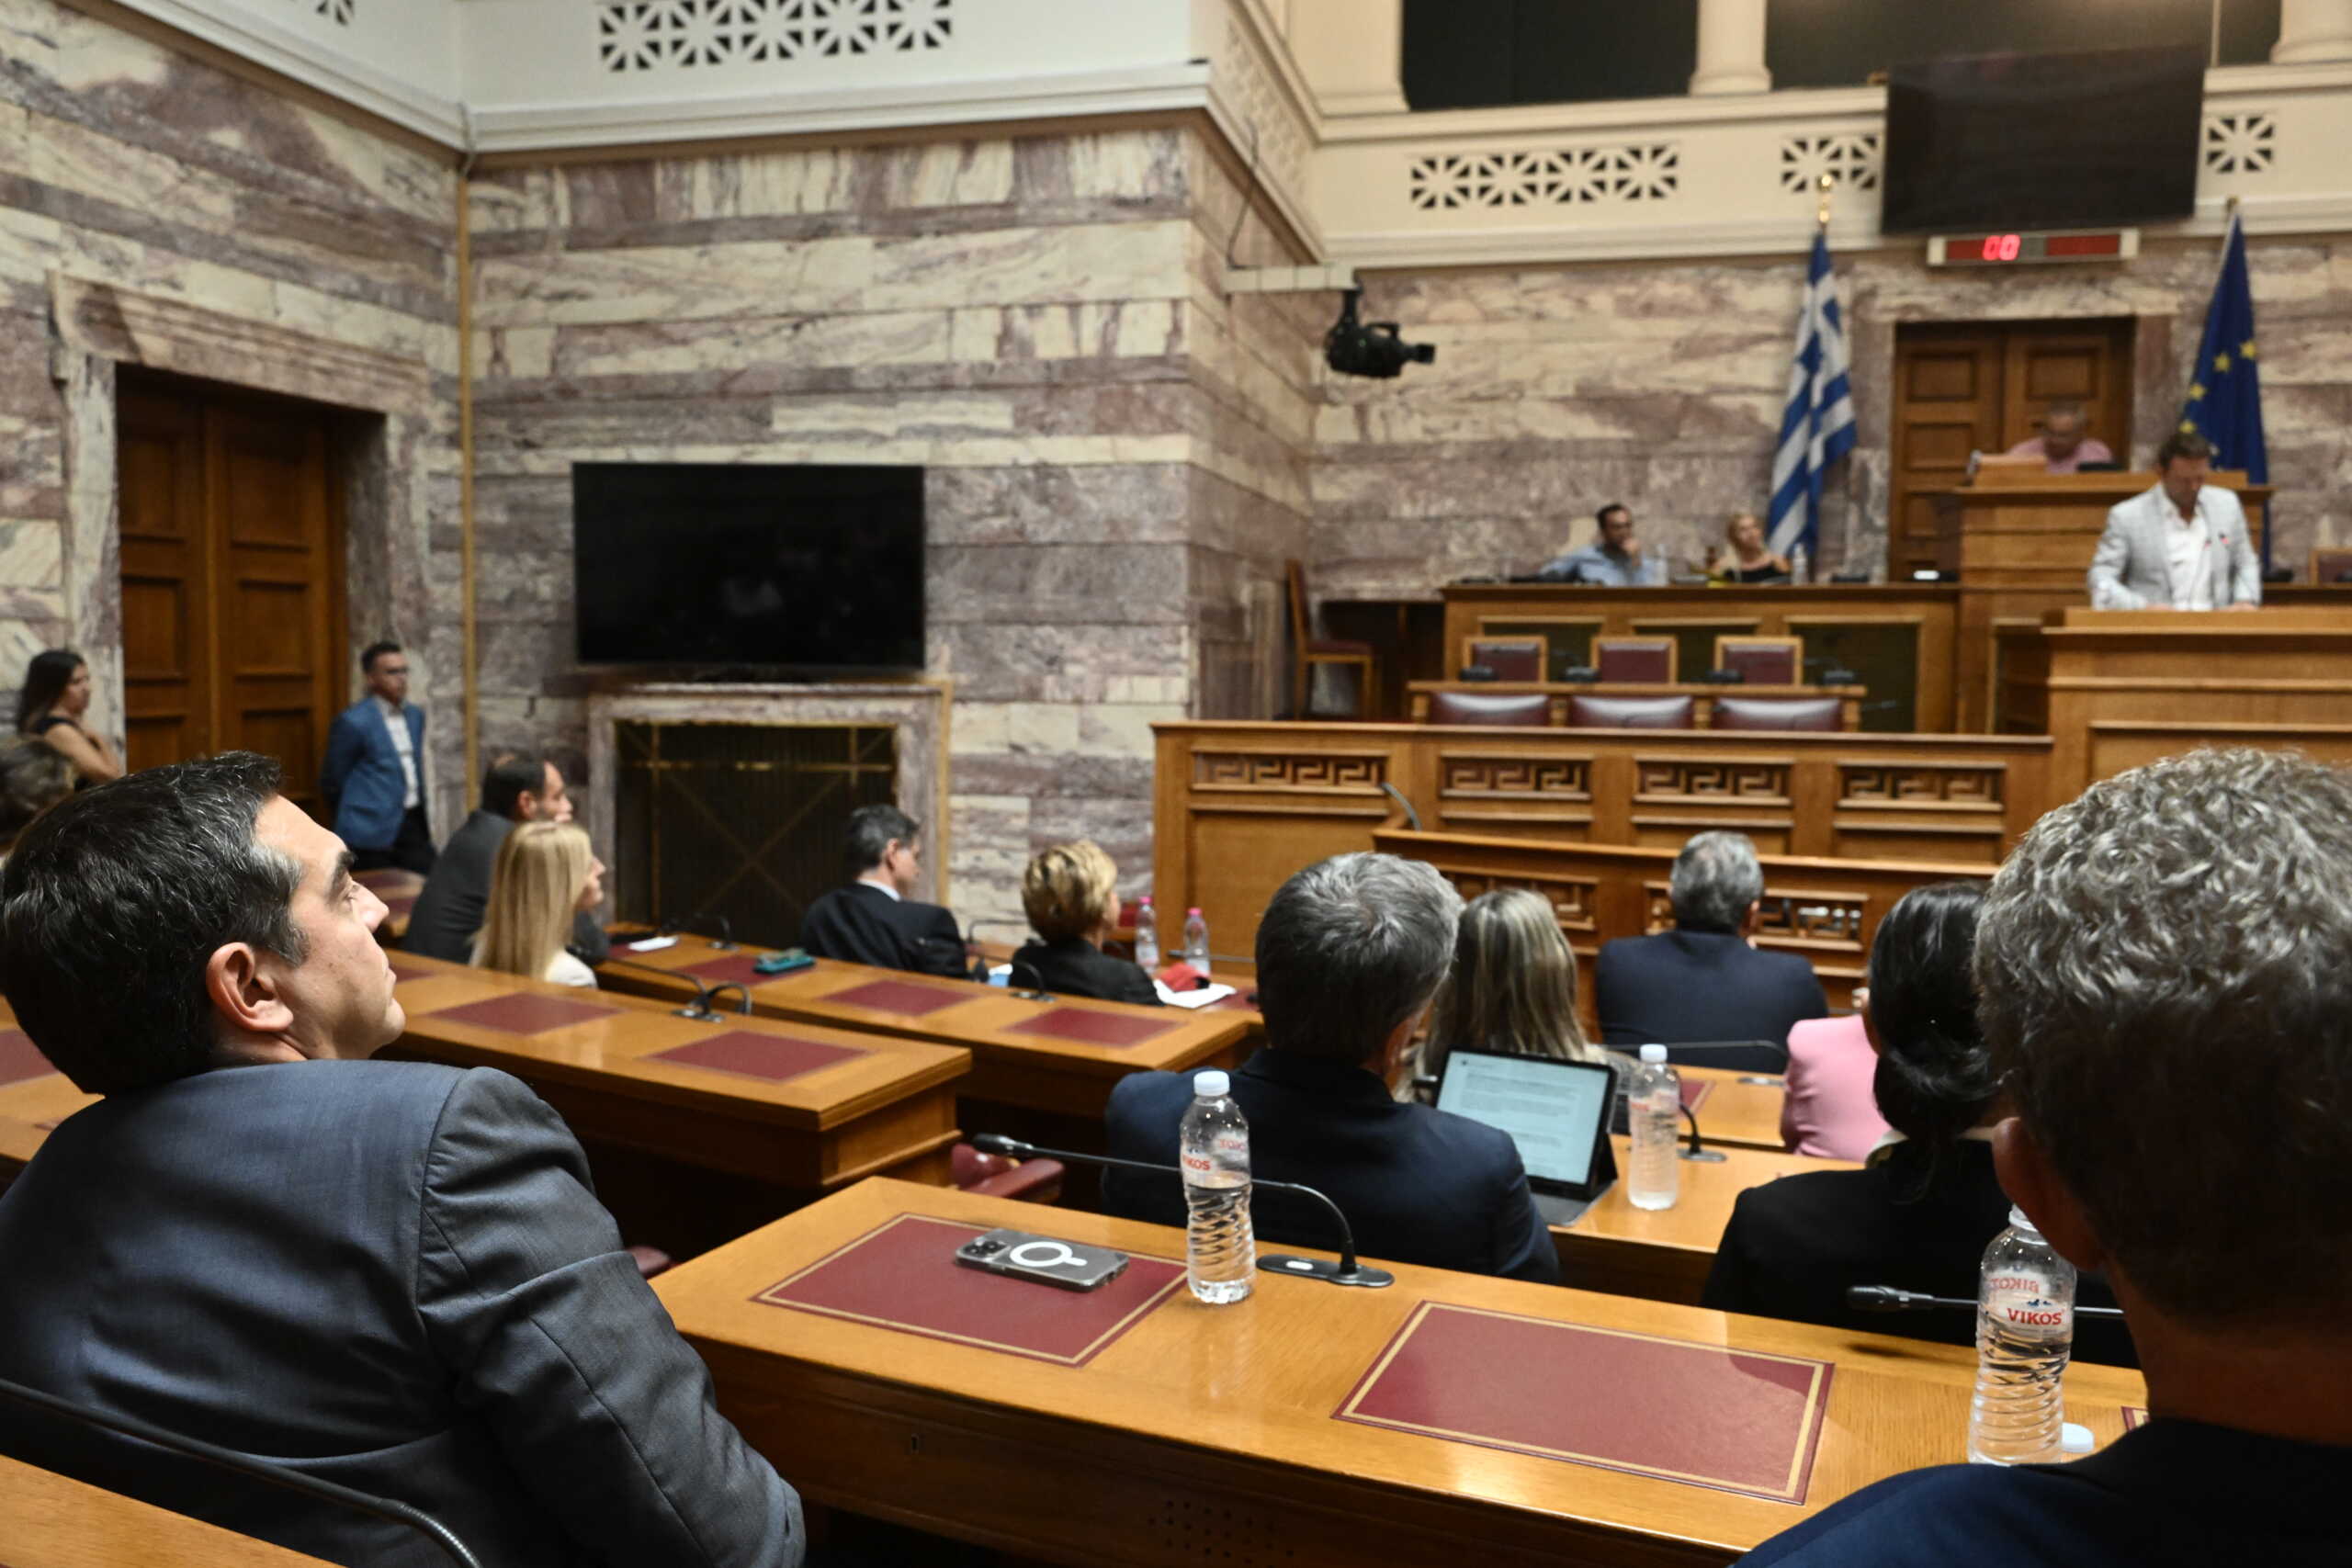 ΣΥΡΙΖΑ: «Ο κύβος ερρίφθη! Ο Κασσελάκης δεν μπορεί να είναι αρχηγός αριστερού κόμματος» λέει εσωκομματική τάση